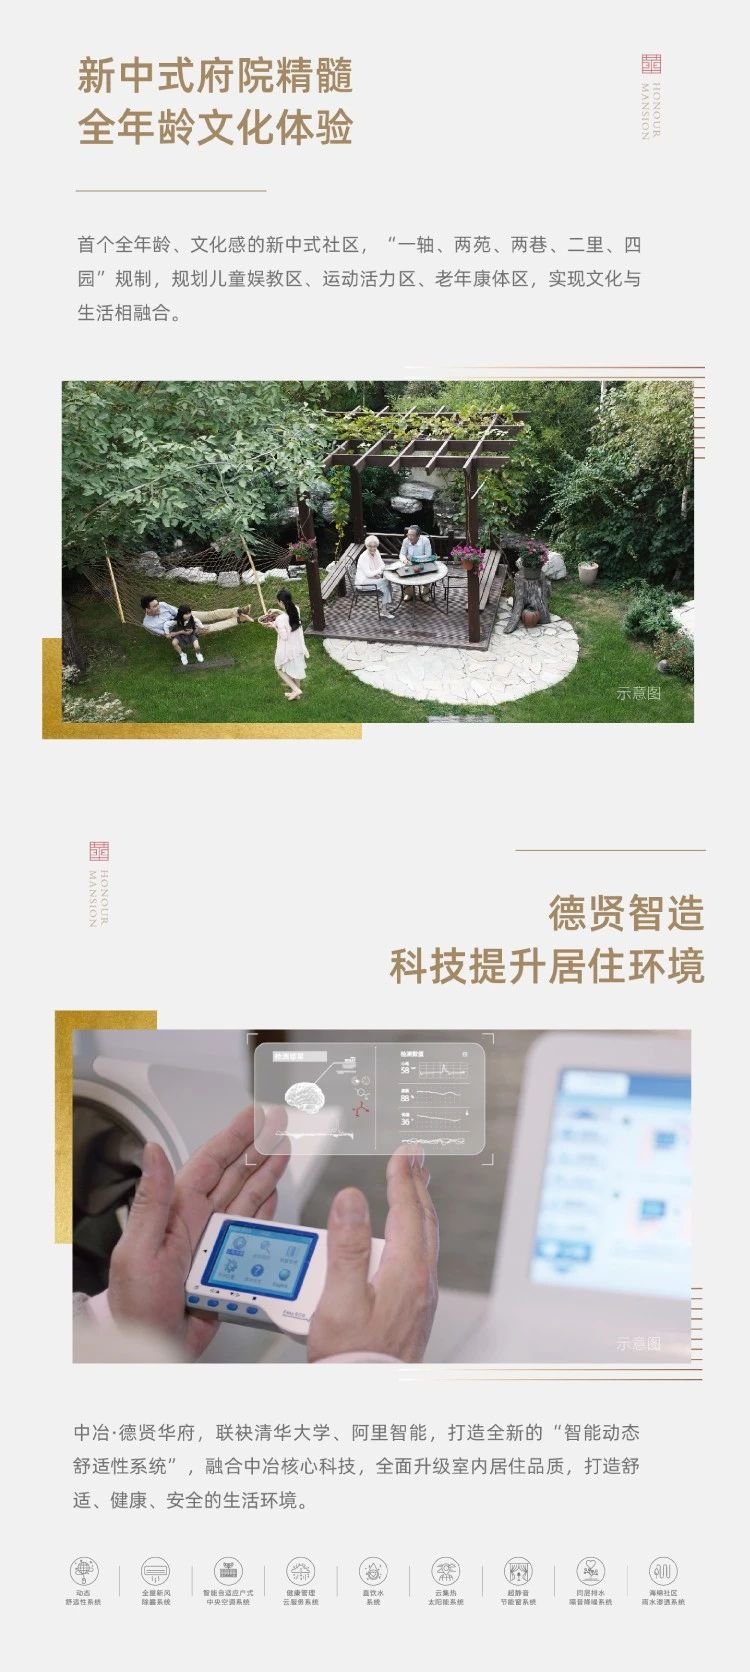 中国音乐小金钟·“童唱新时代” 2019展演秦皇岛选区启动